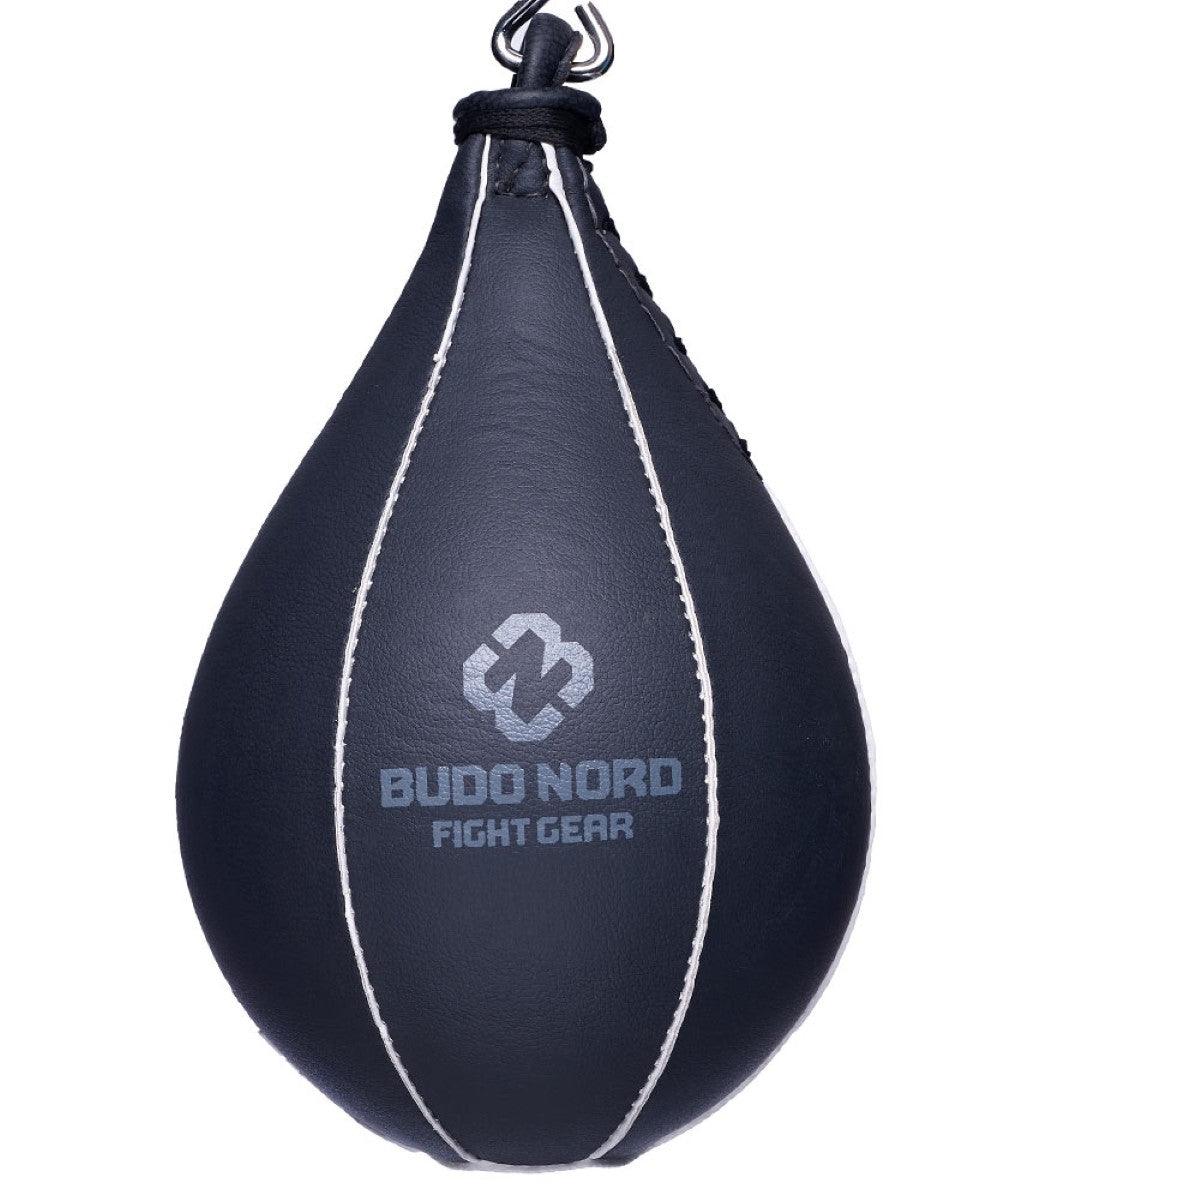 Budo-Nord Fight Gear Päronboll